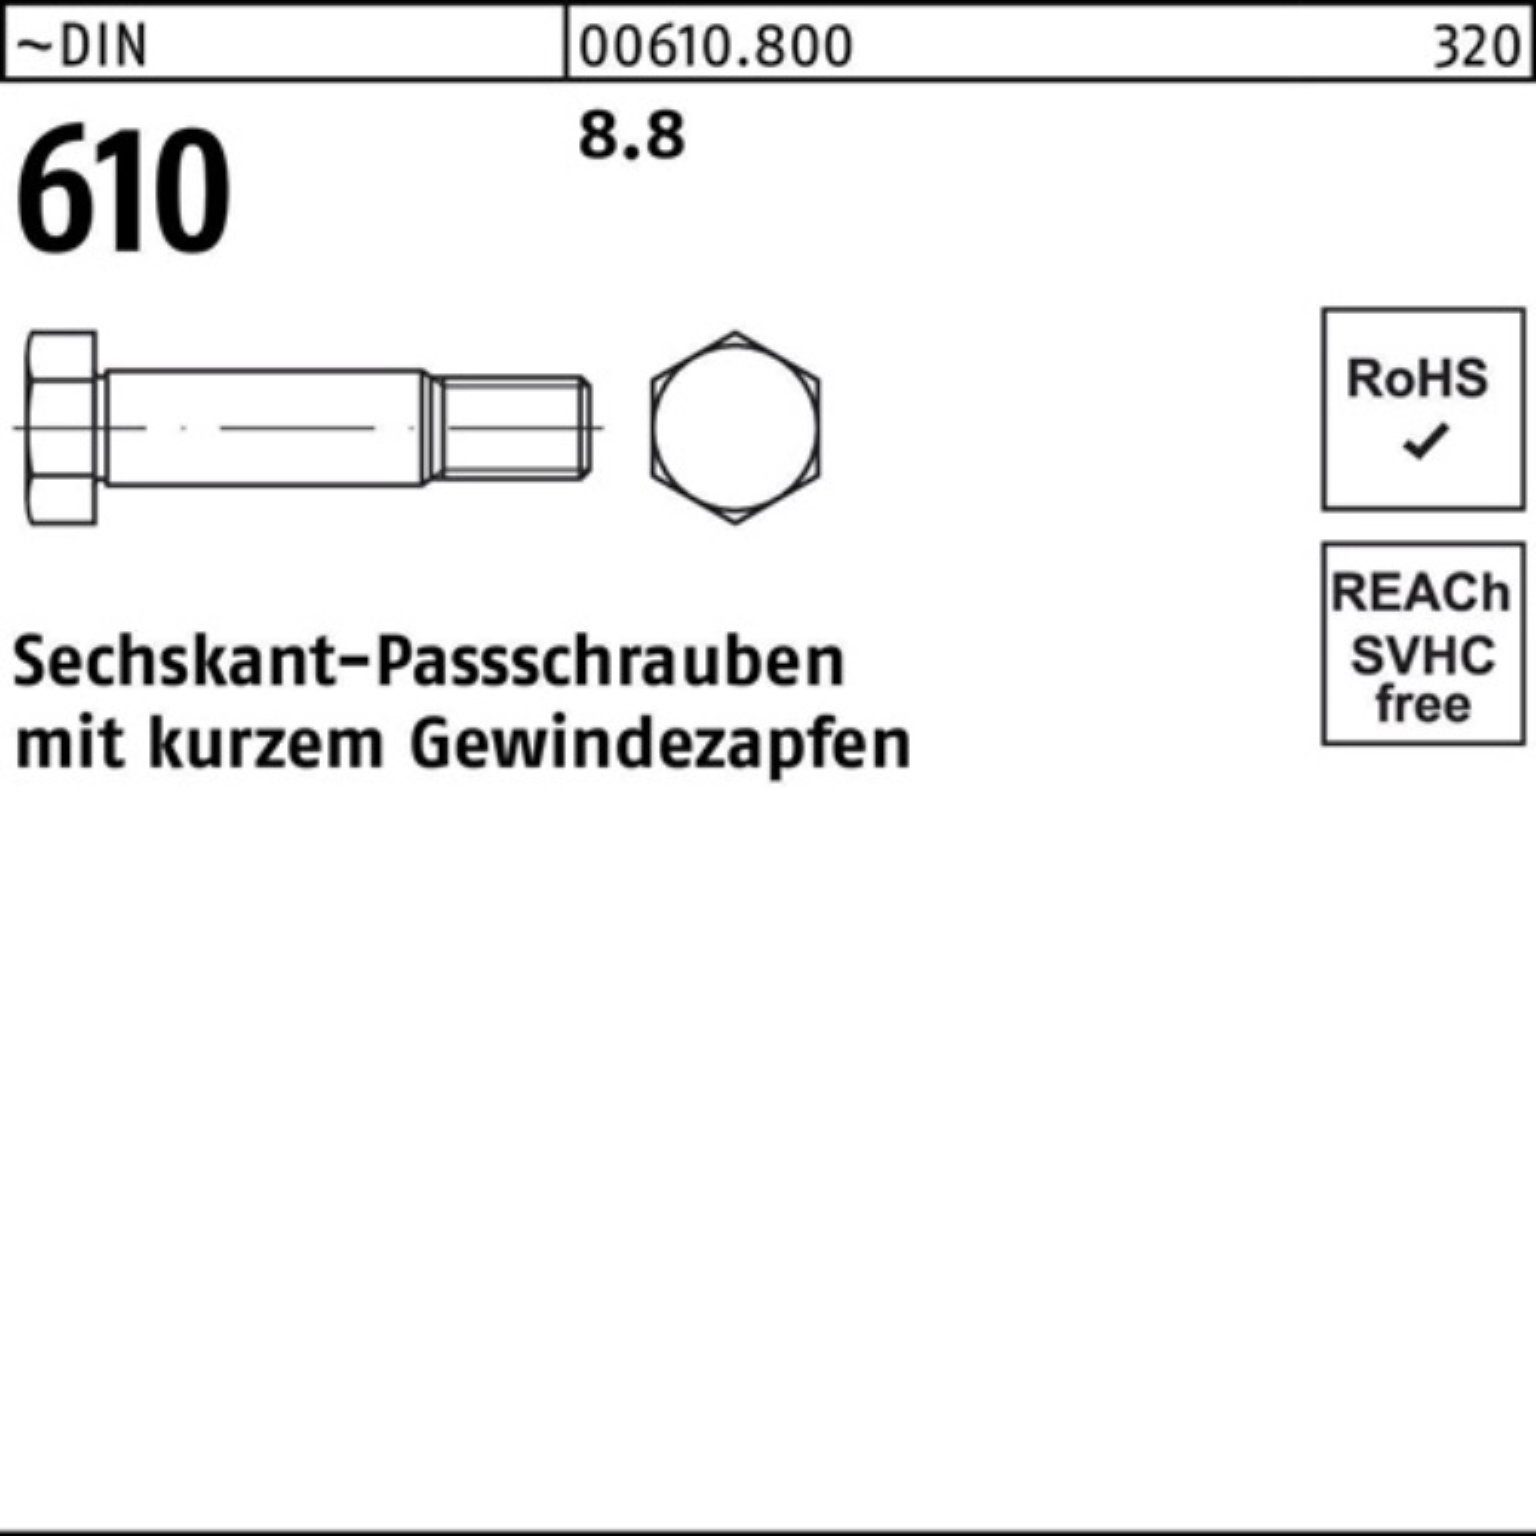 Schraube 100er Pack Sechskantpassschraube M36x 100 DIN kurzem Reyher 610 Gewindezapfen